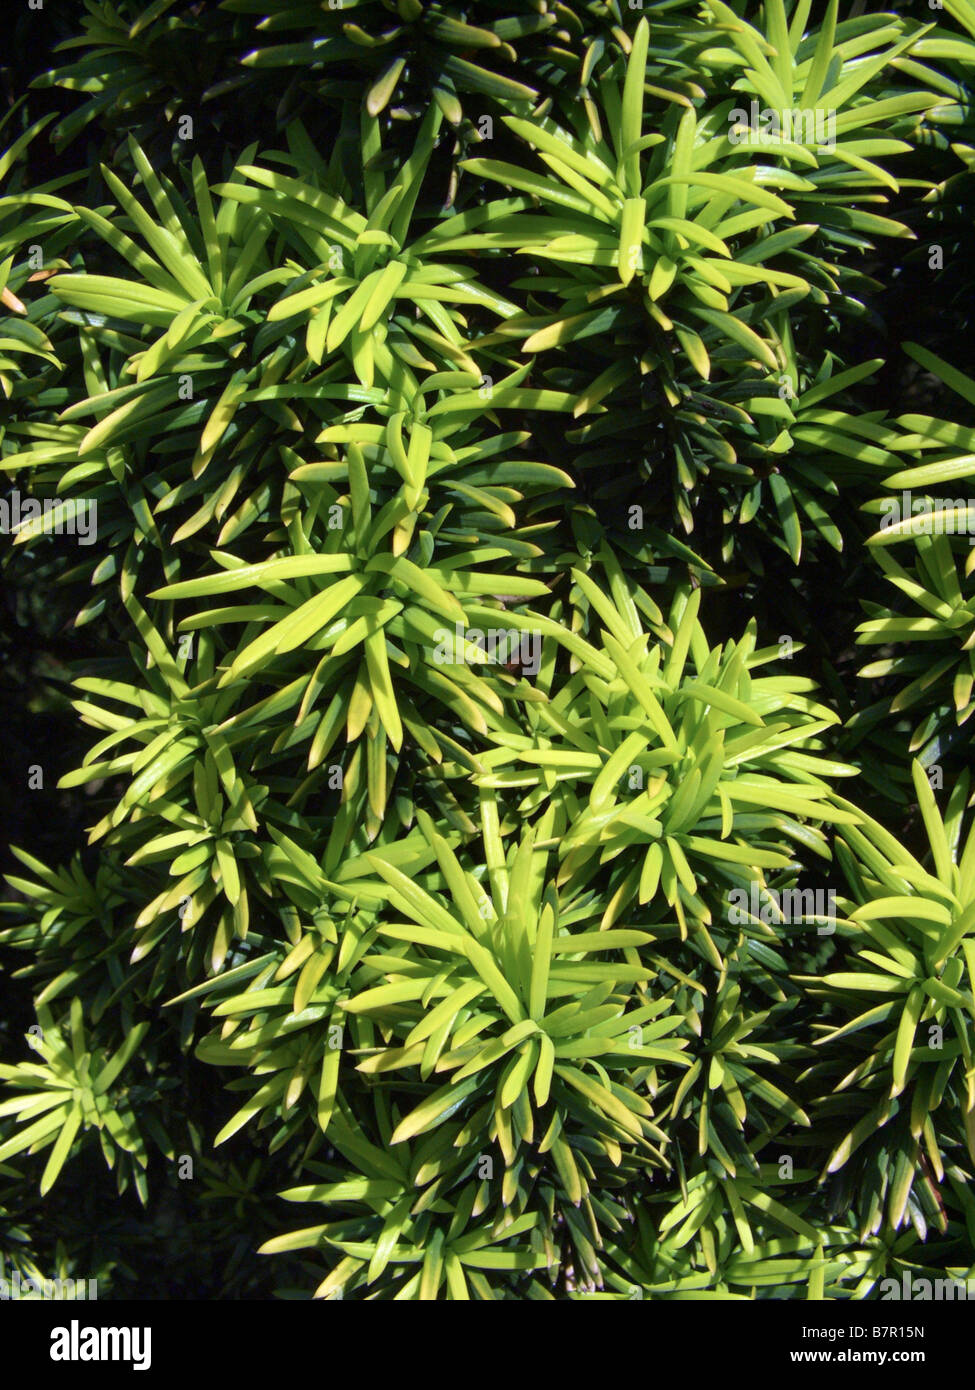 common yew (Taxus baccata 'Fastigiata Aurea', Taxus baccata Fastigiata Aurea), leaves of sort Fastigiata Aurea Stock Photo